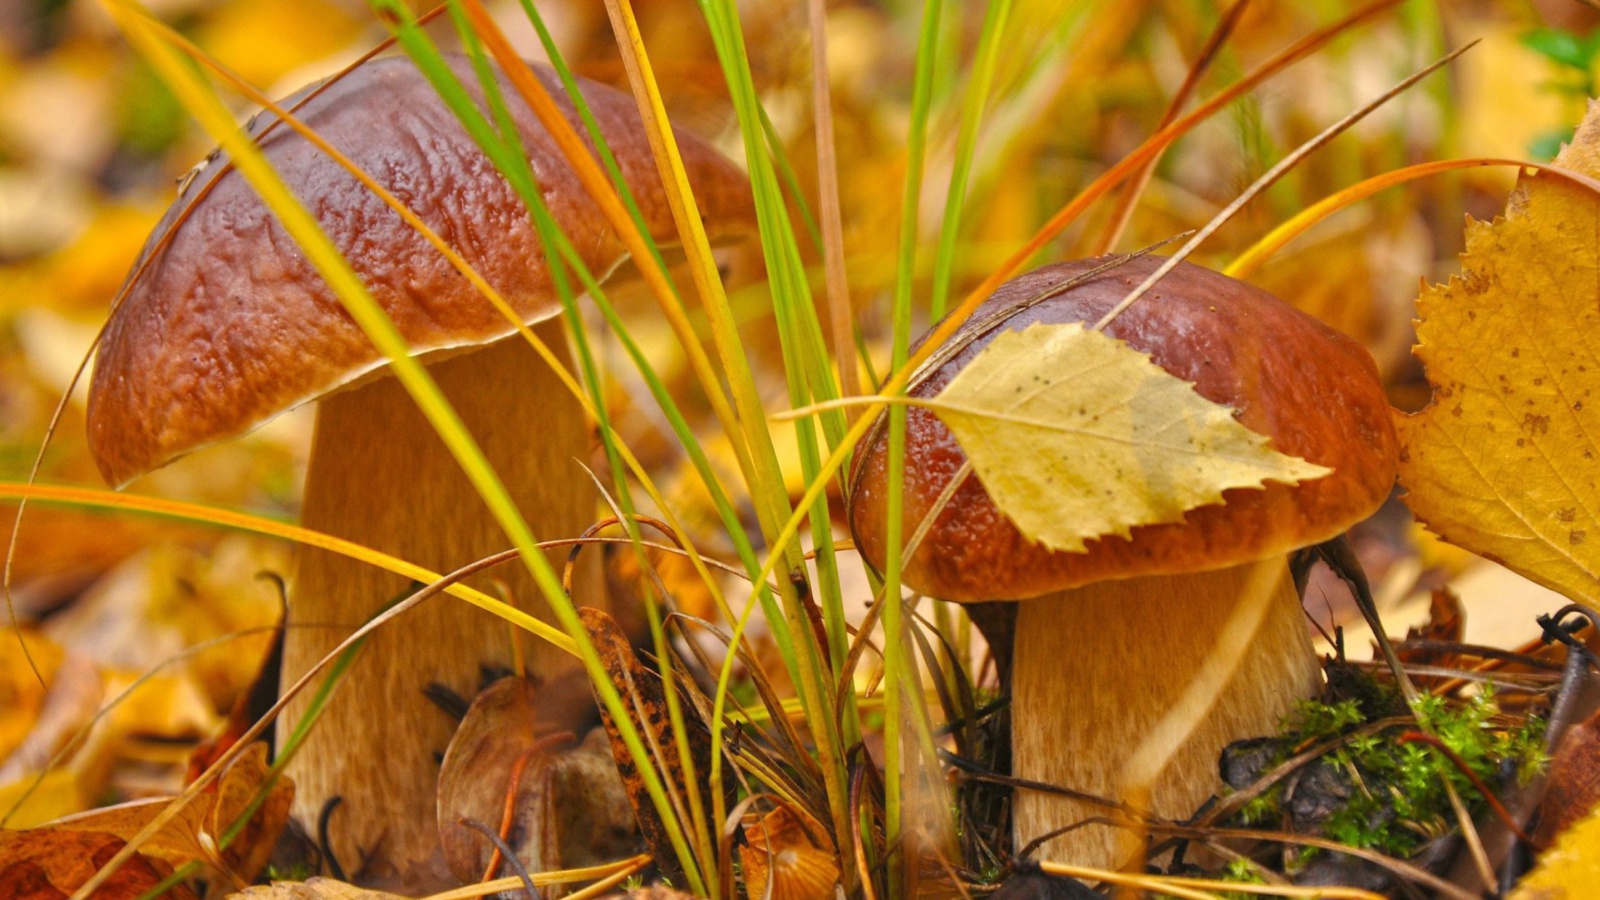 Обои Autumn Mushrooms with Yellow Leaves 1600x900